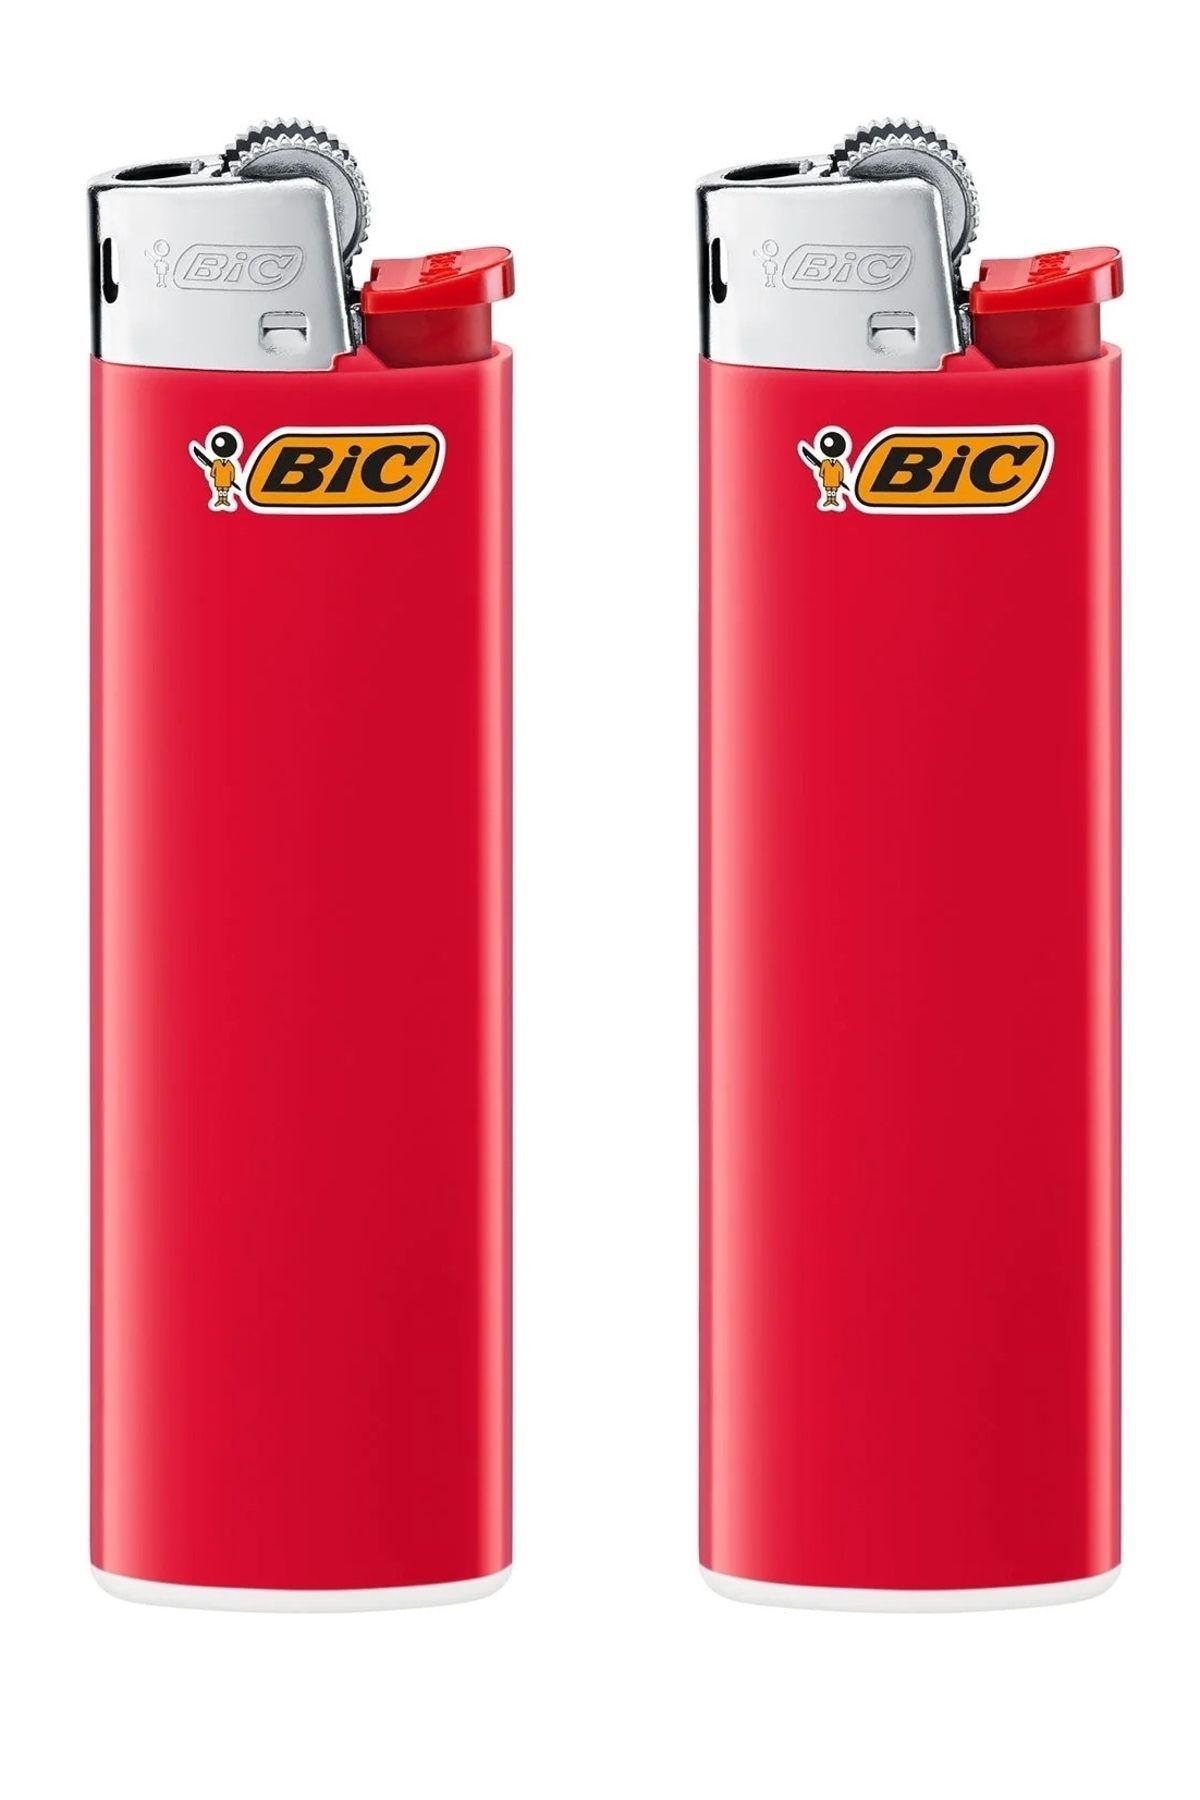 Bic J6 Maxi Çakmak (Red) (2 Adet)